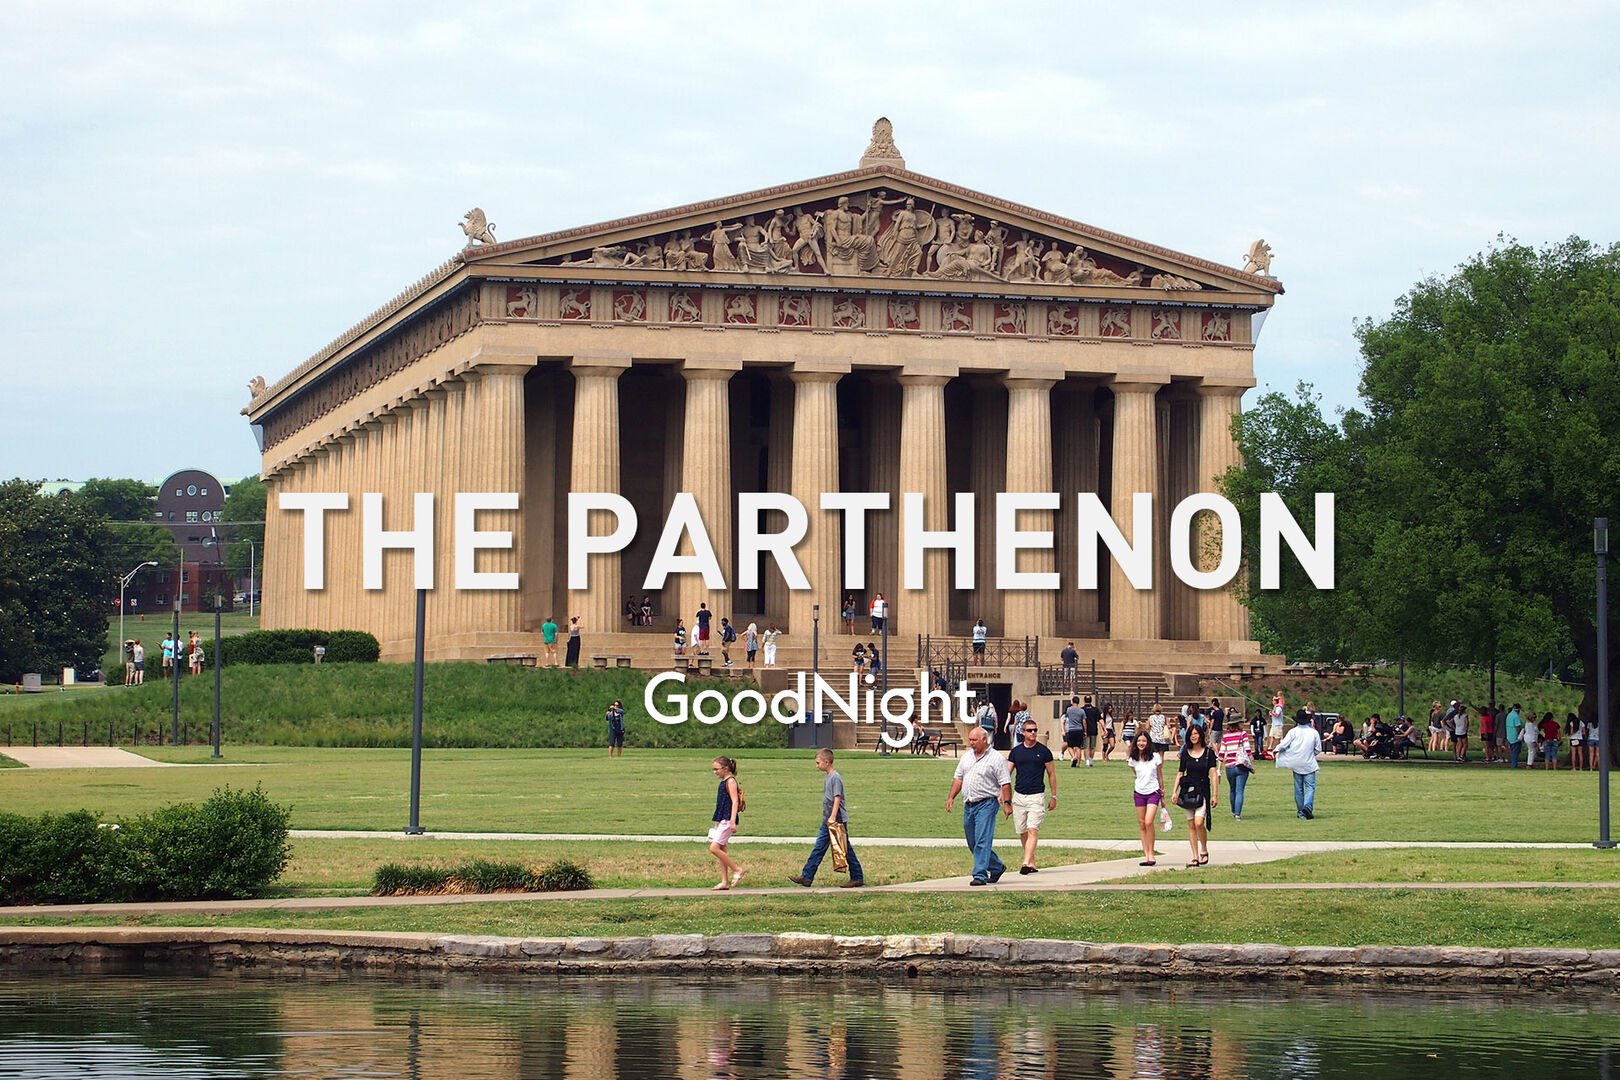 10 mins: The Parthenon